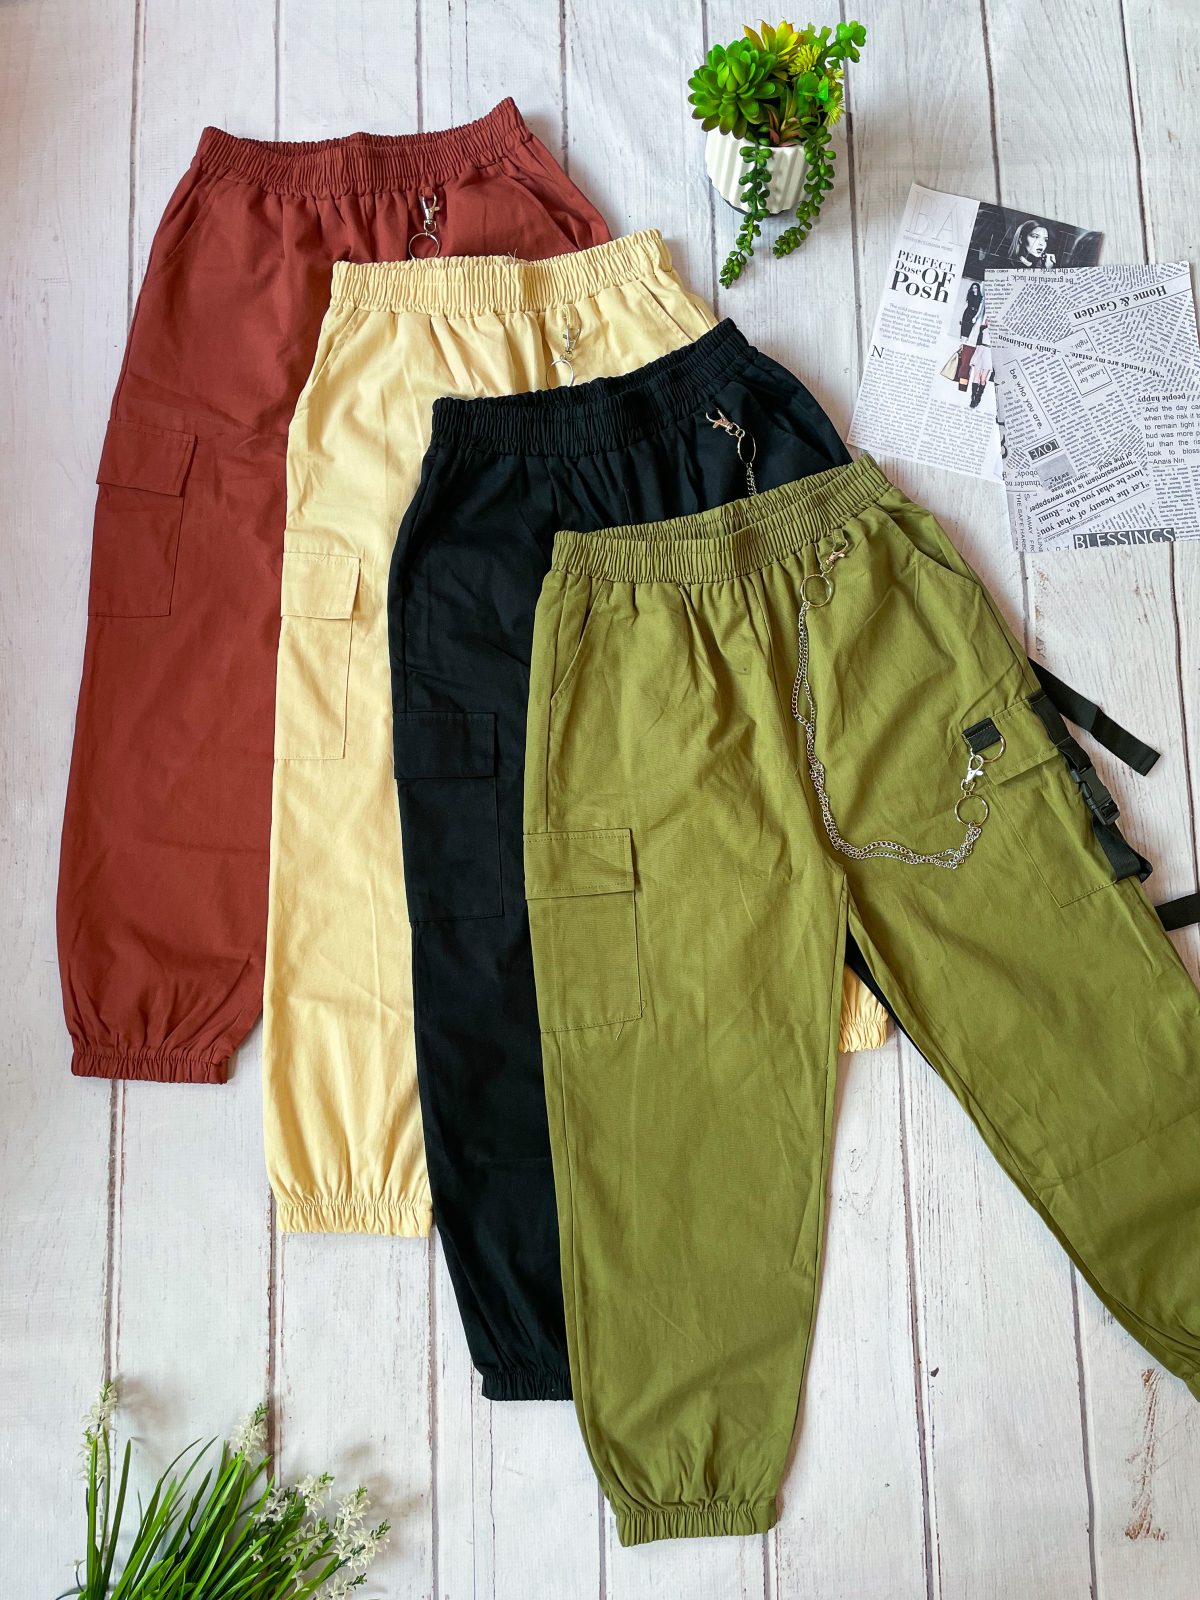 Cargo Pants beige, con cadenas platedas y bolsillos-ropa gallardo-ecuador